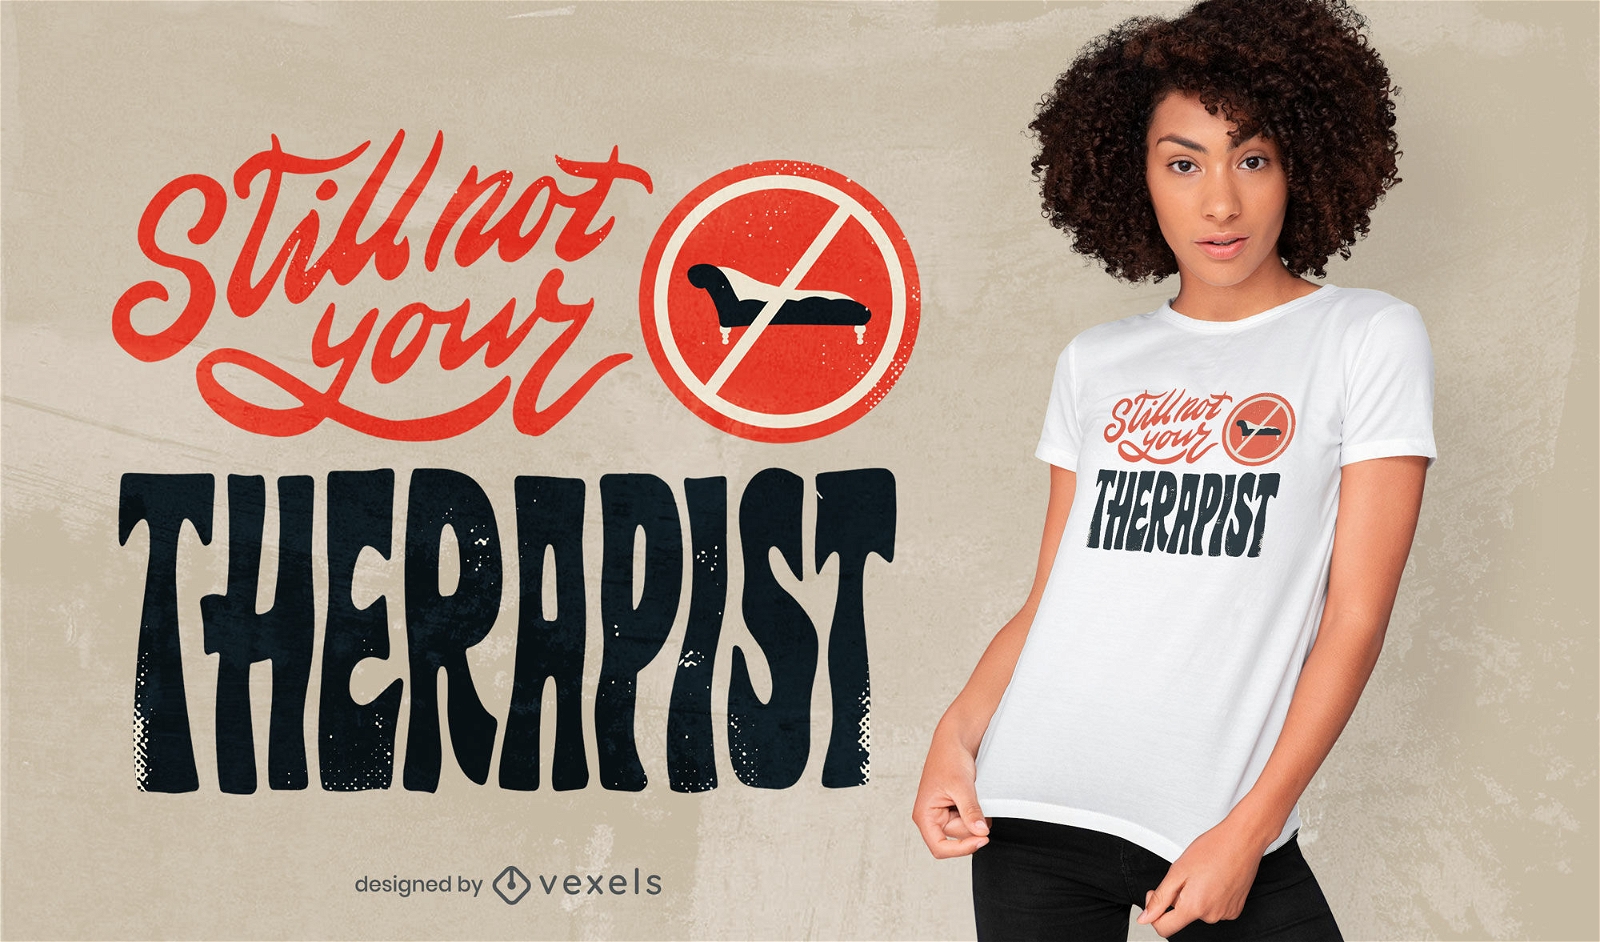 Legal, n?o ? o design de sua t-shirt de terapeuta